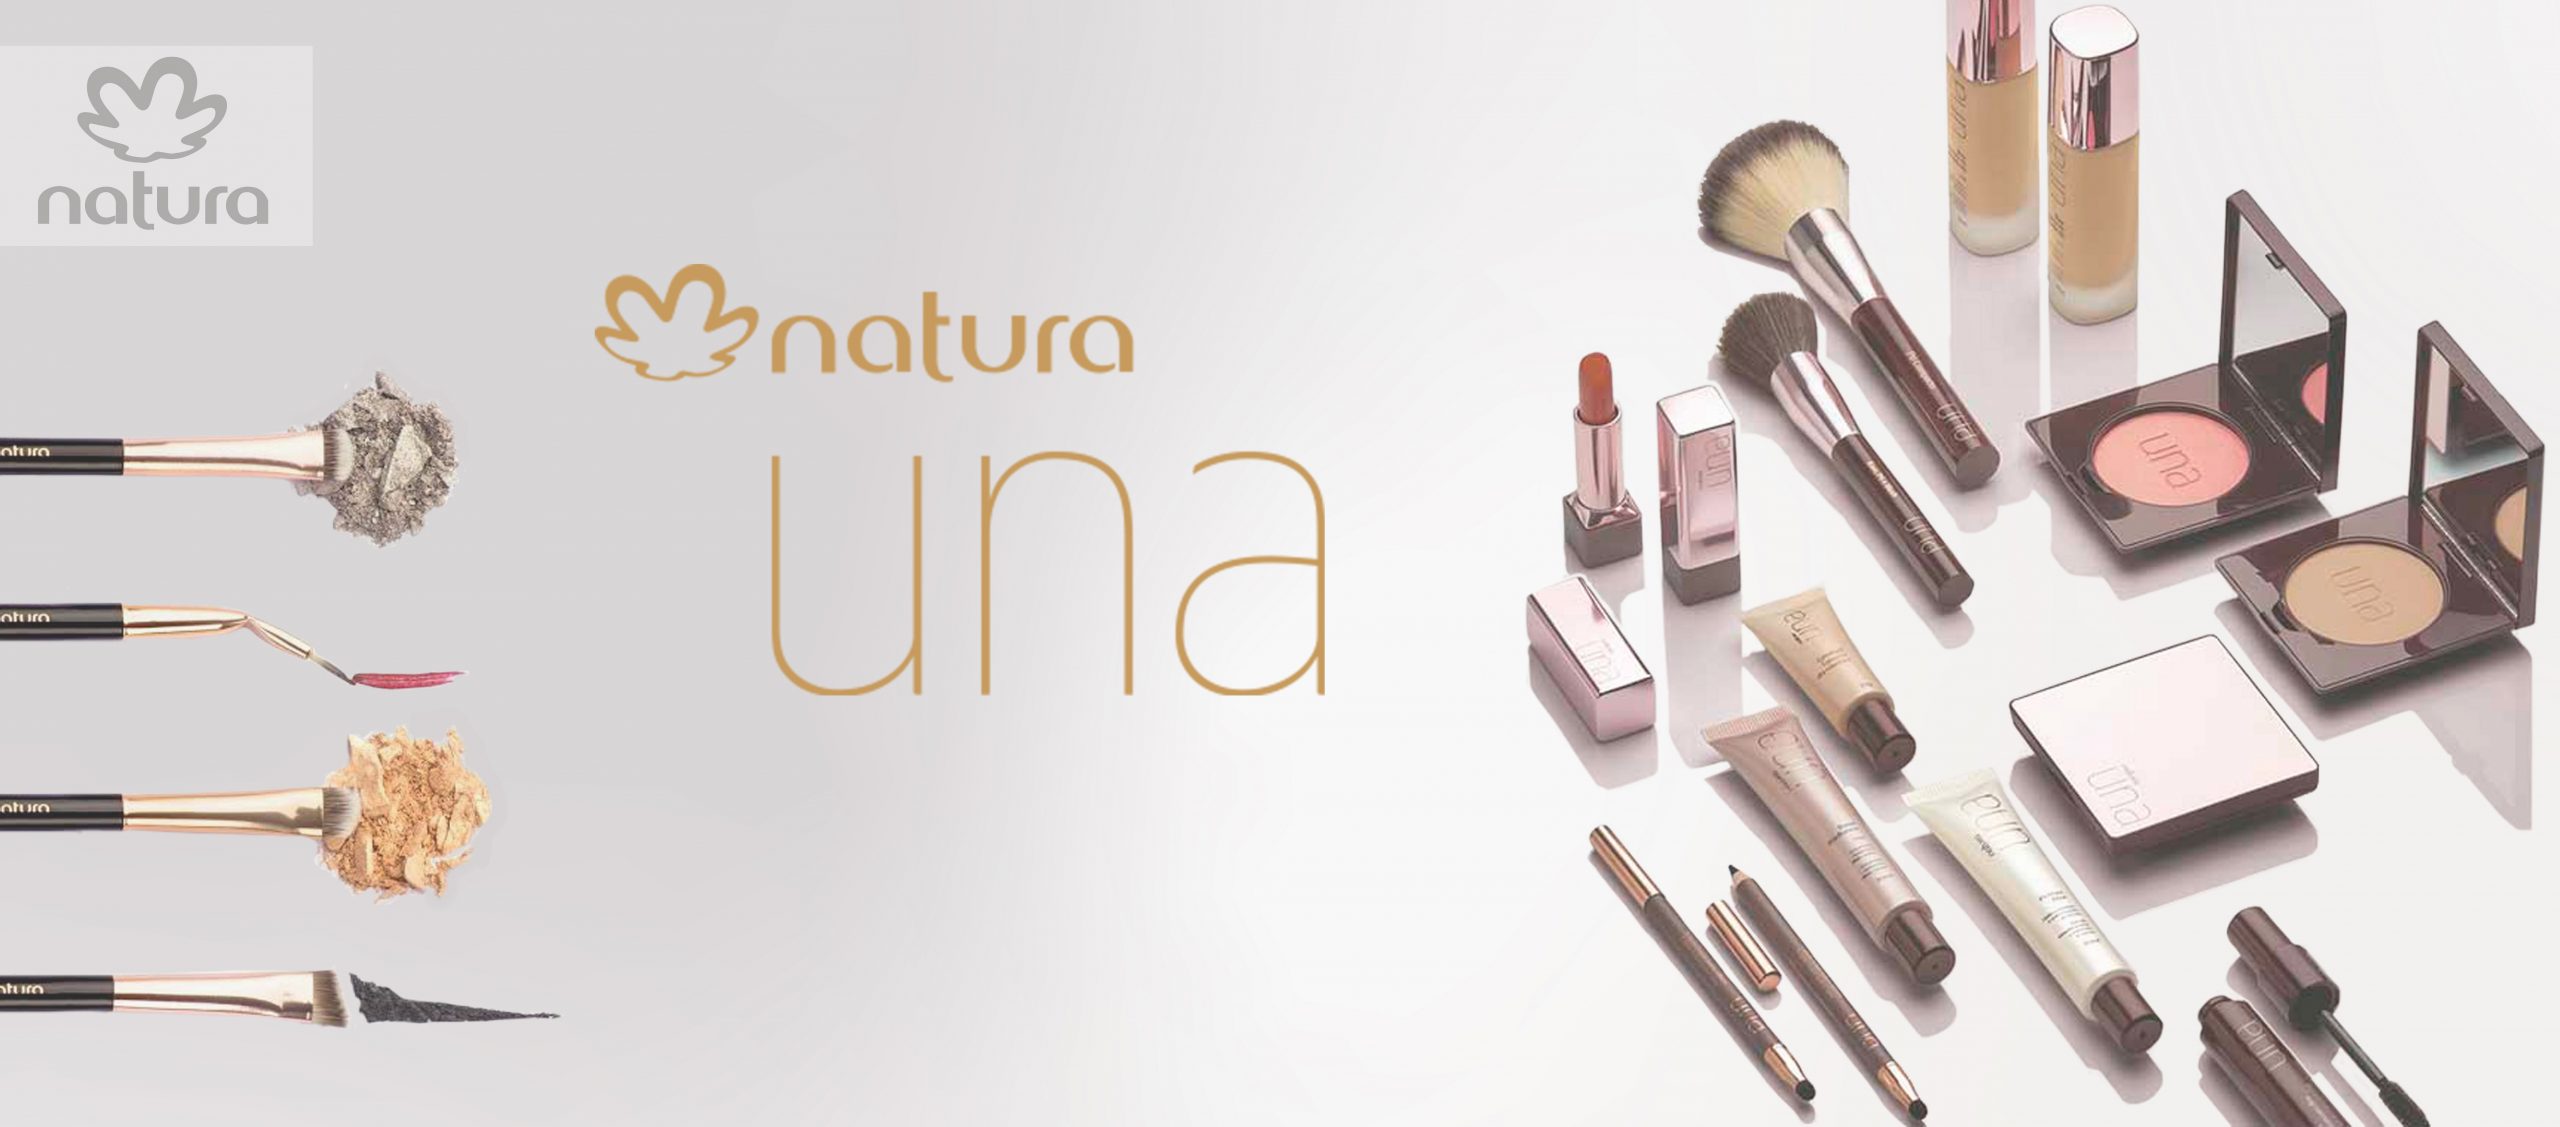 ▷ Maquillaje Natura - Conoce UNA, marca de maquillaje Premium Natura